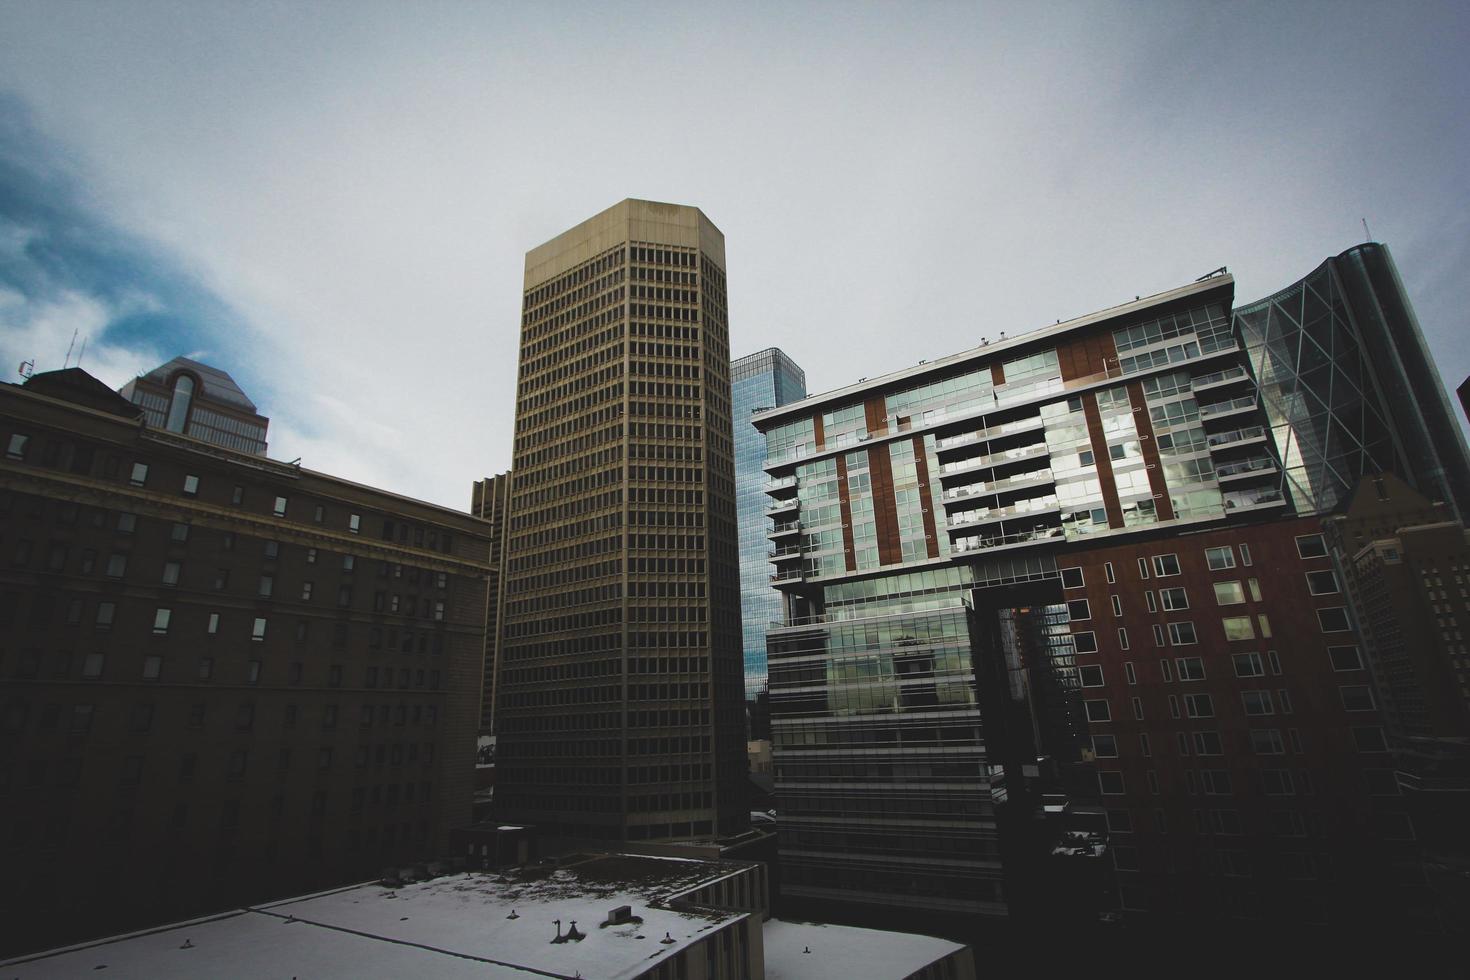 byggnader i Calgary, Kanada foto